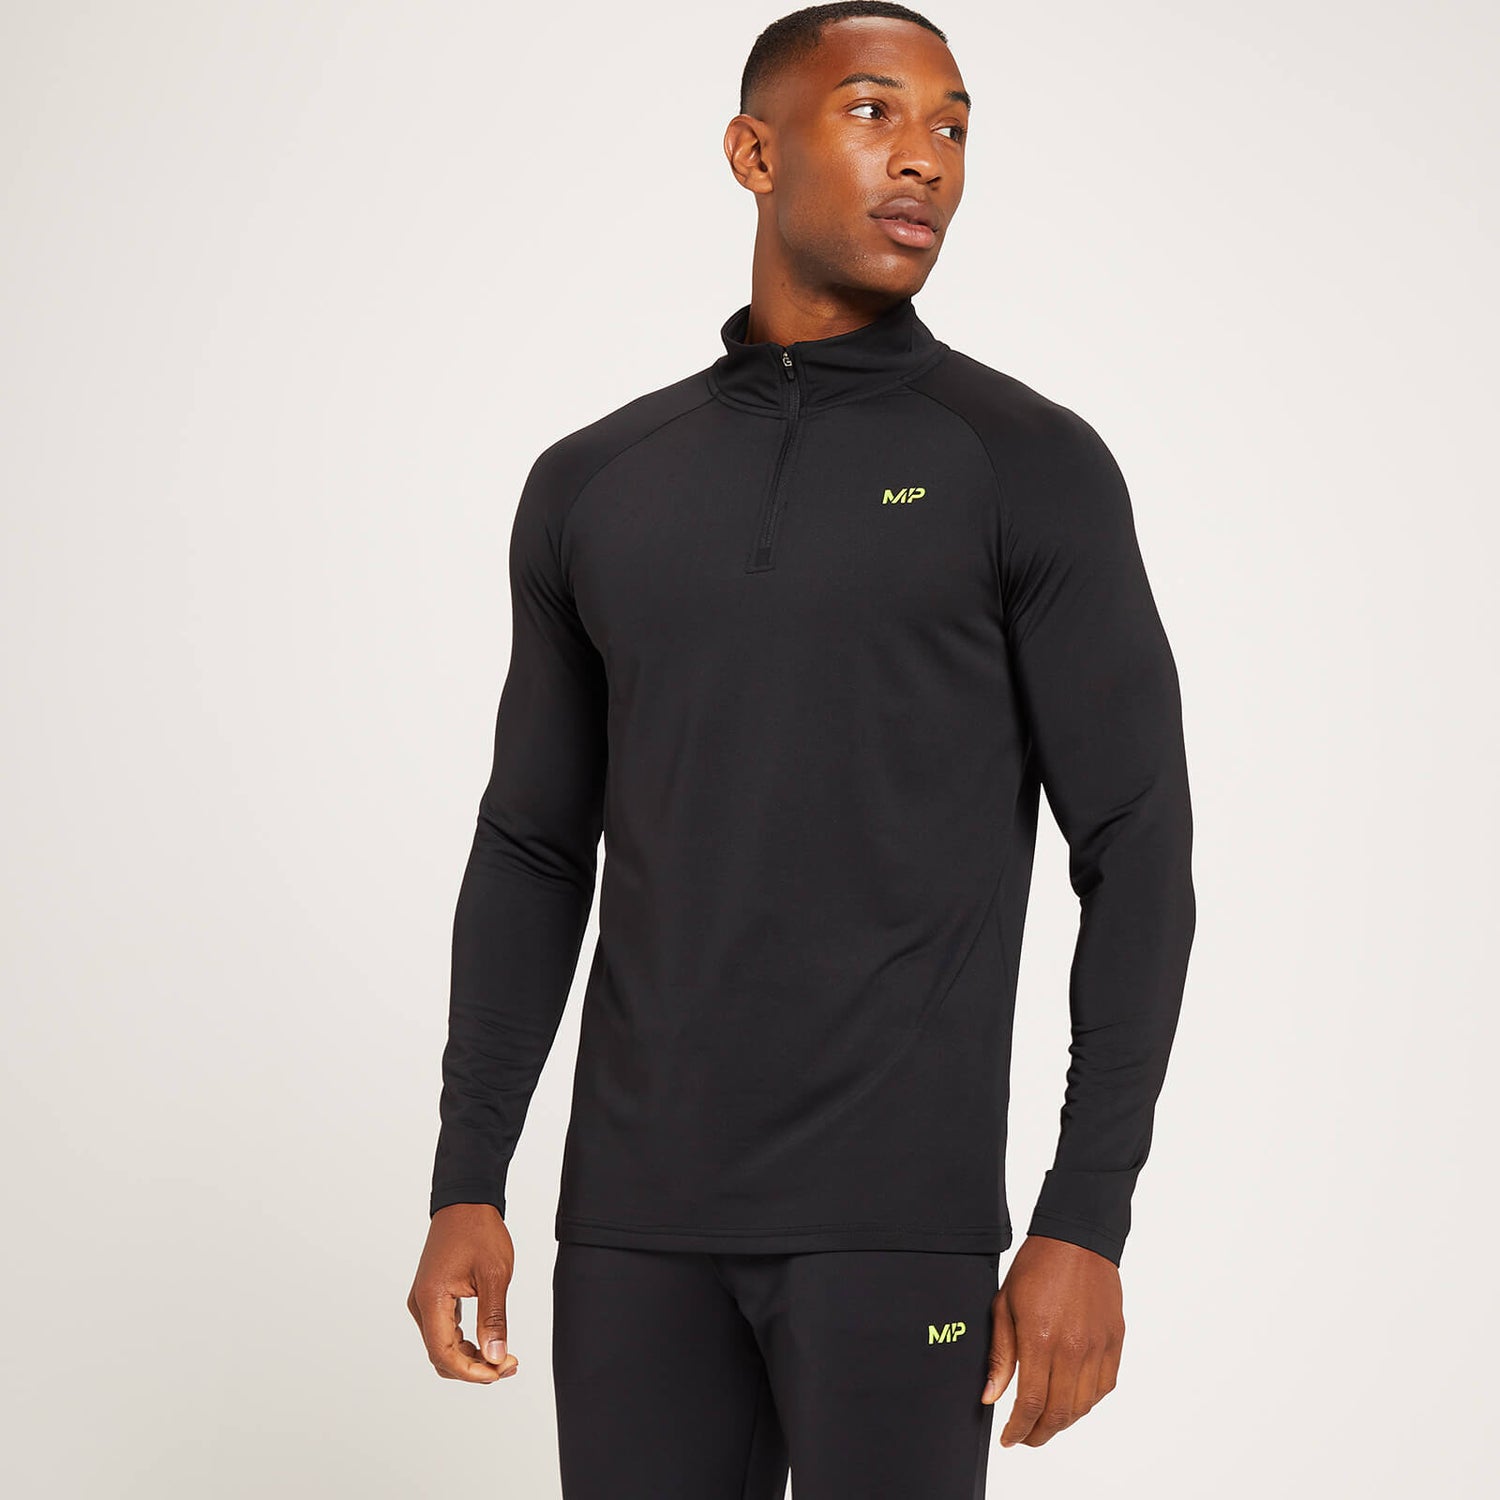 Męska bluza treningowa z suwakiem ¼ z kolekcji MP Linear Mark Graphic – czarna - XS